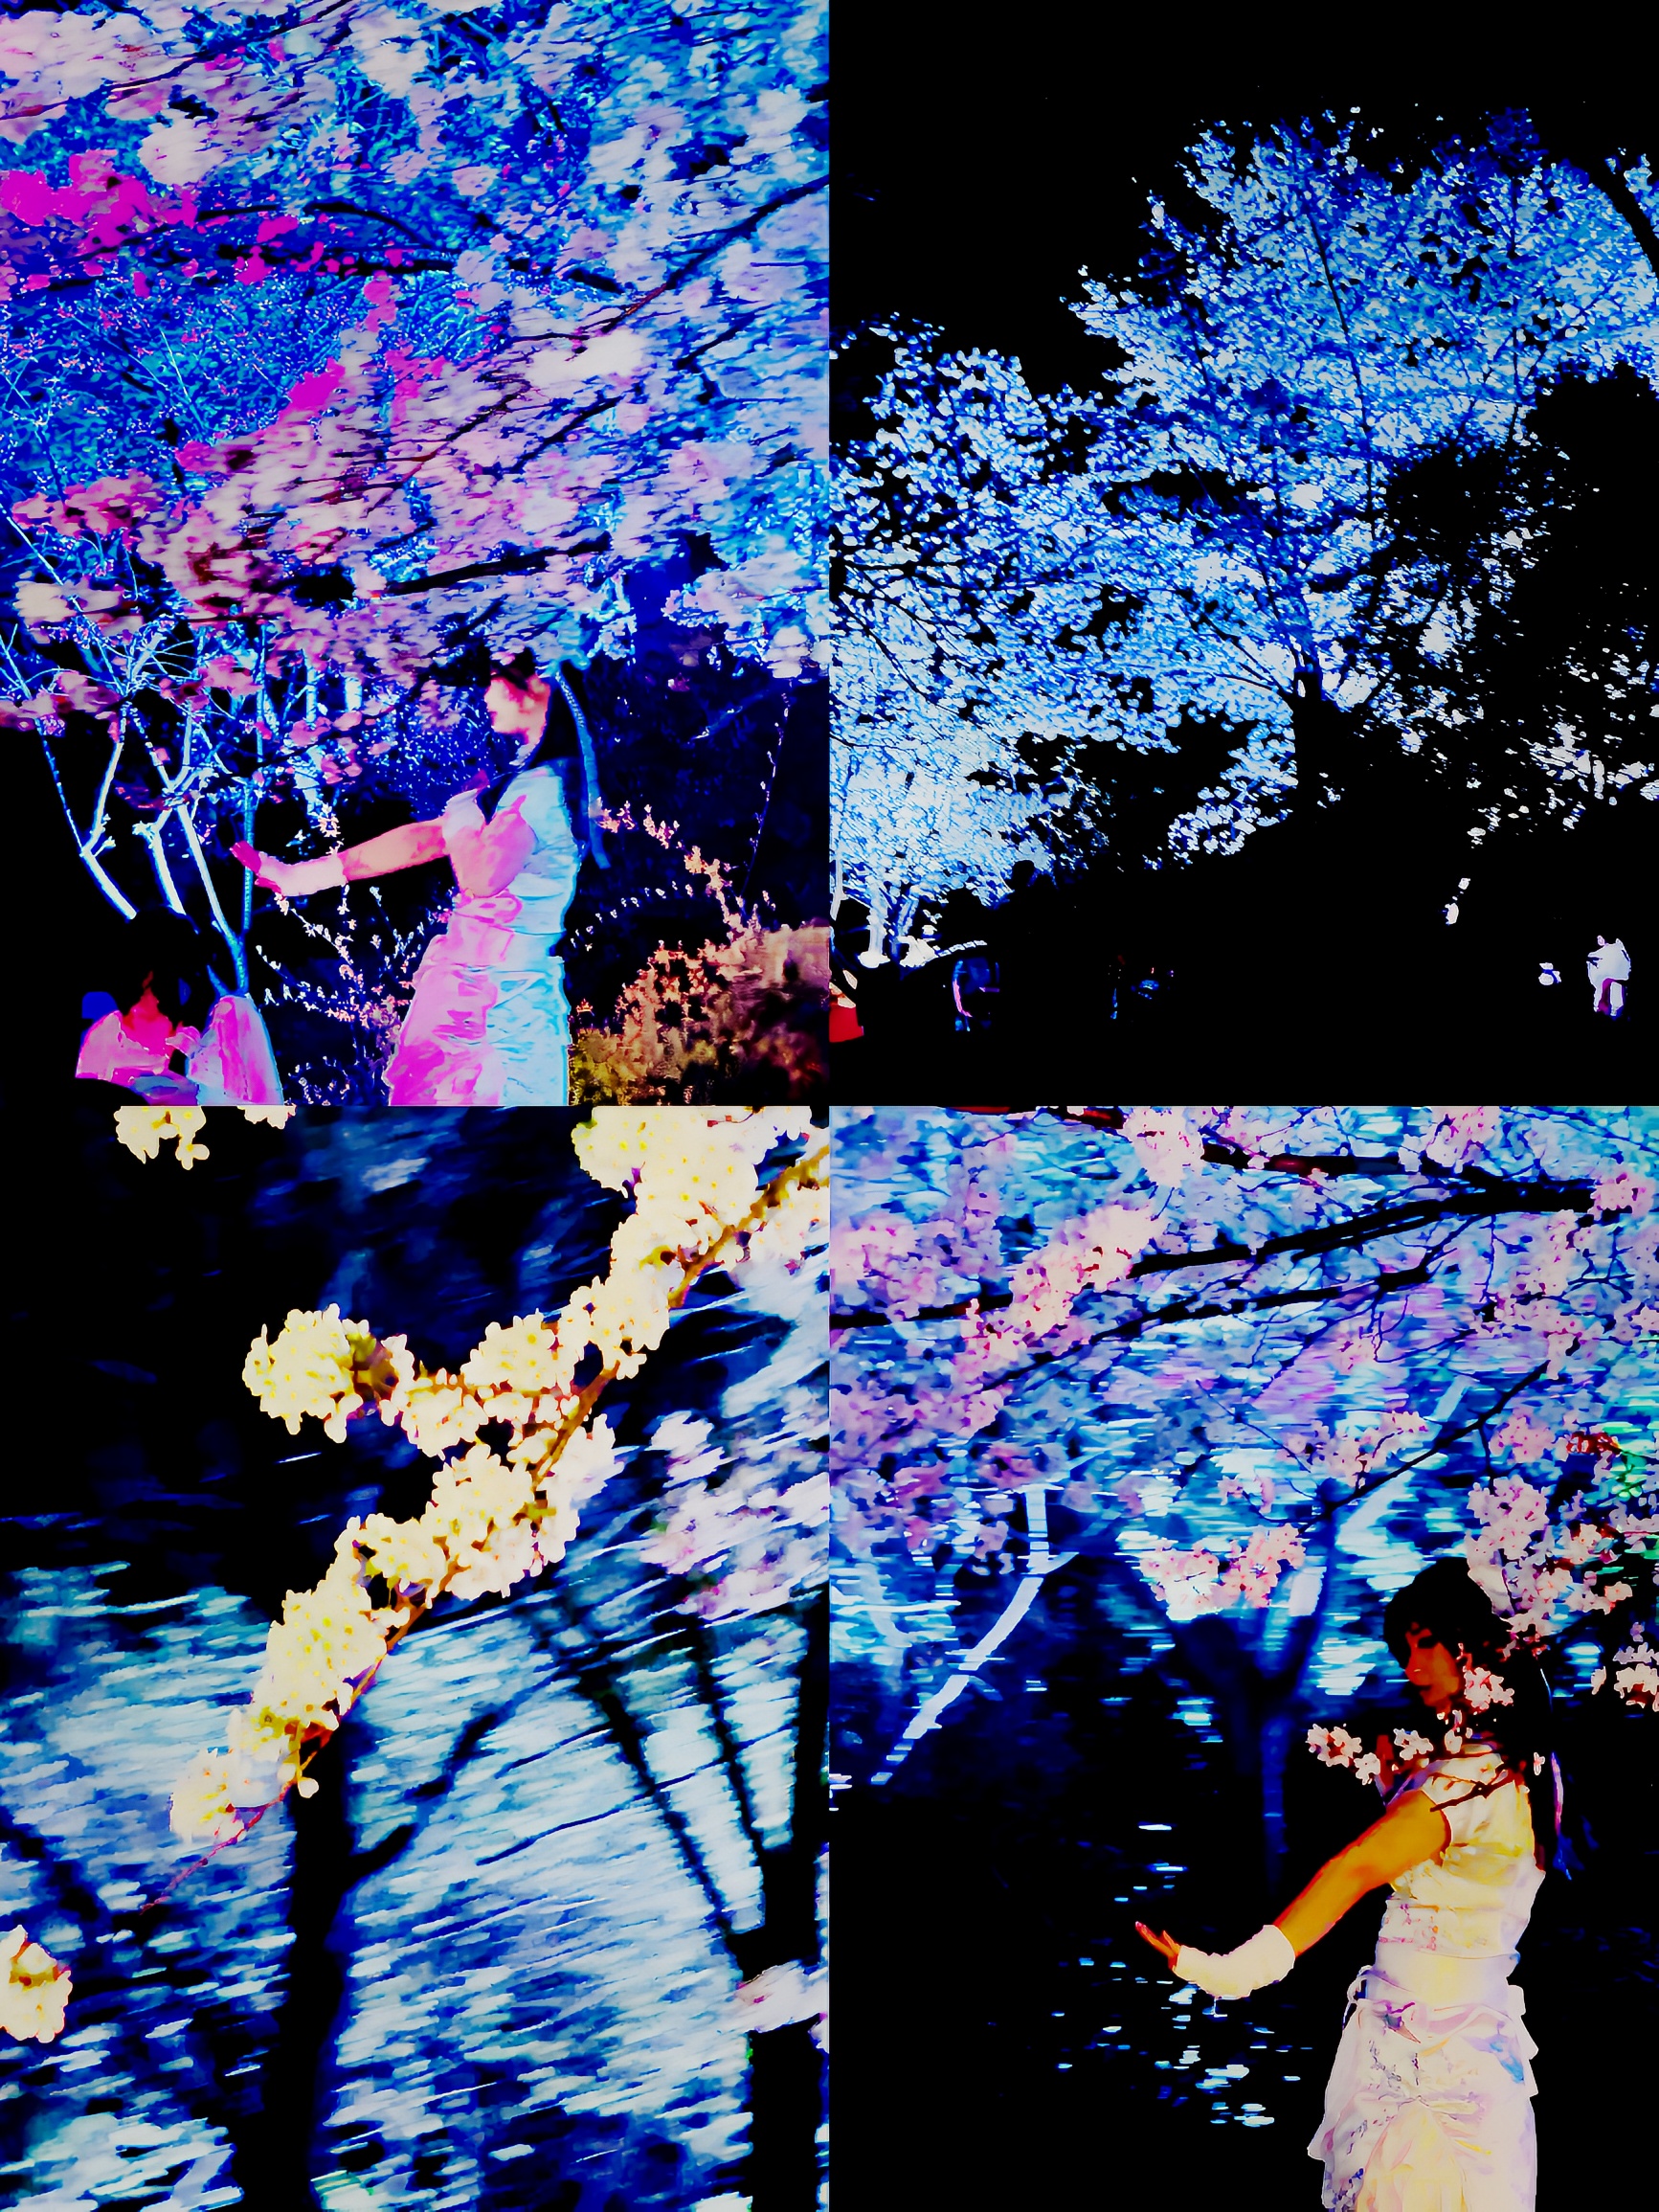 我在无锡鼋头渚 樱花最盛开时 看到了理想中的春天模样